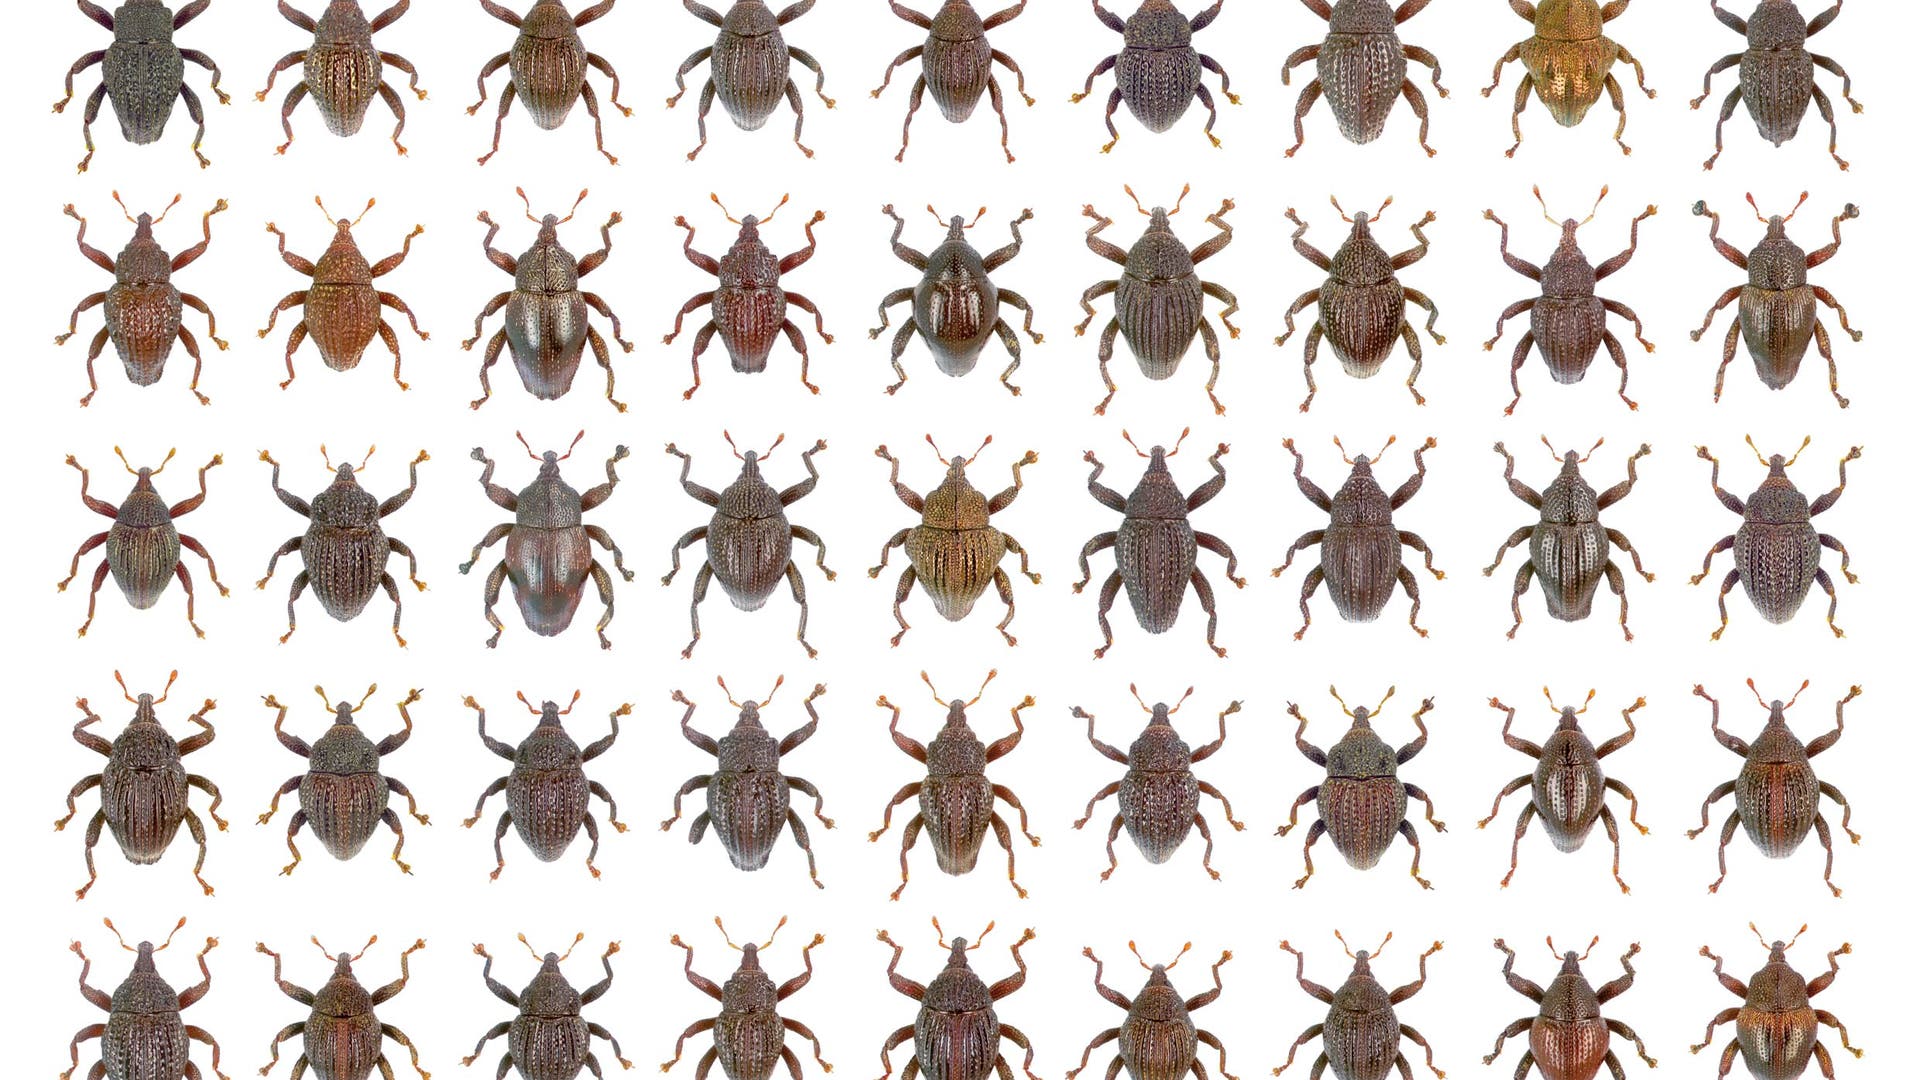 Keanekaragaman Hayati: Kumbang Bonanza dari Indonesia – Science Spectrum